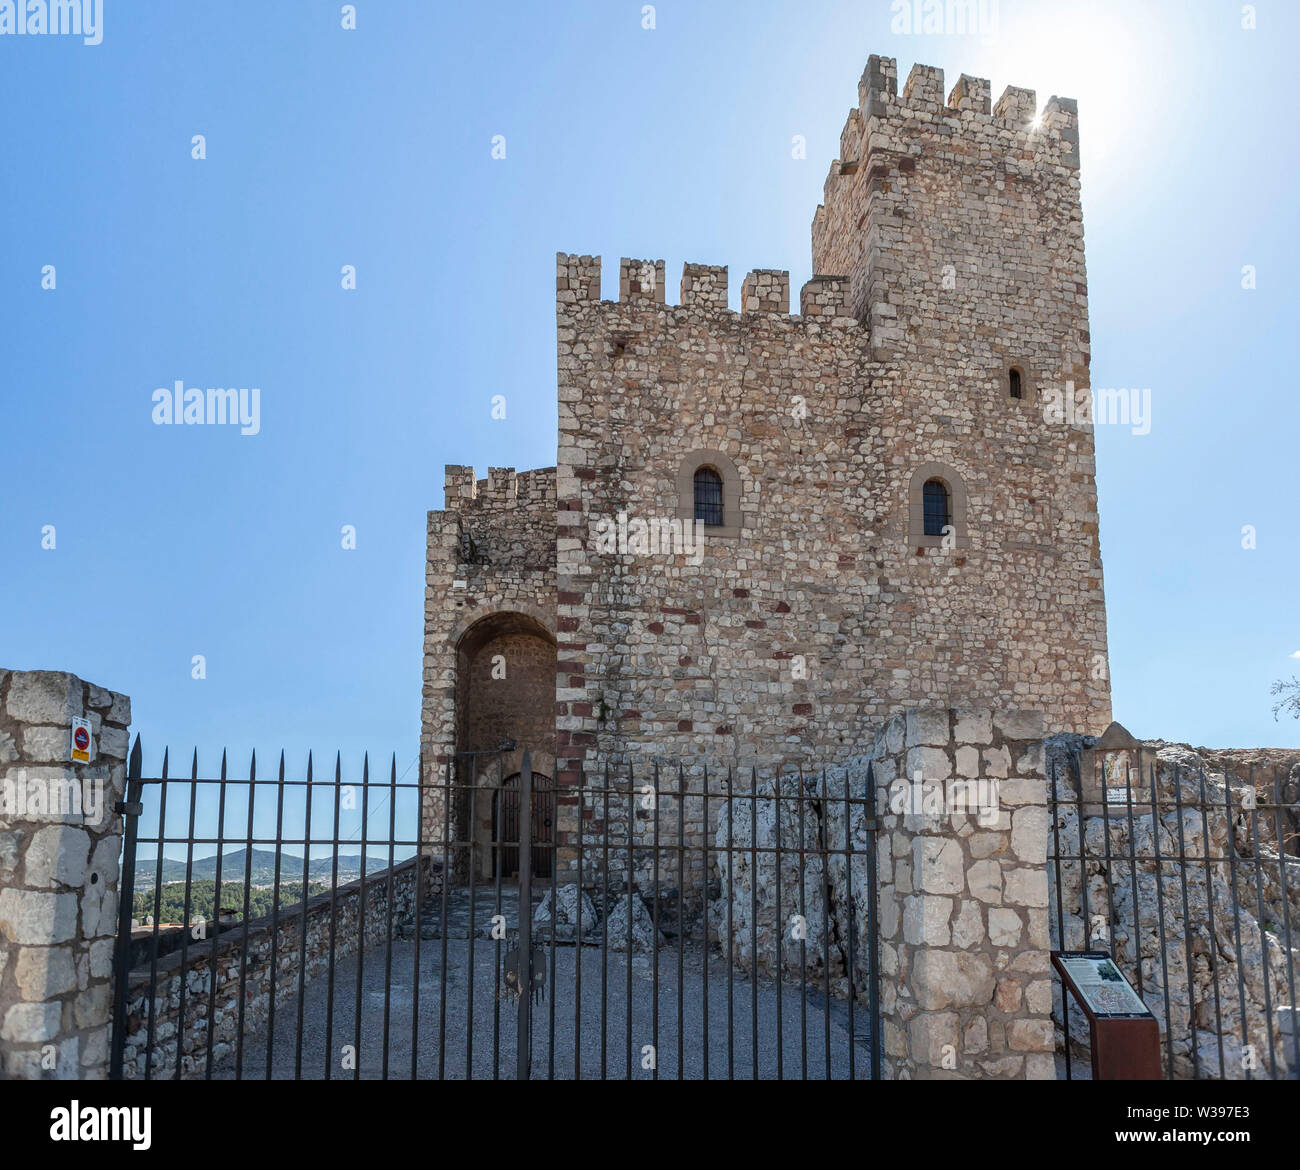 Ancient medieval castle of village El Papiol, Catalonia, Spain. Stock Photo